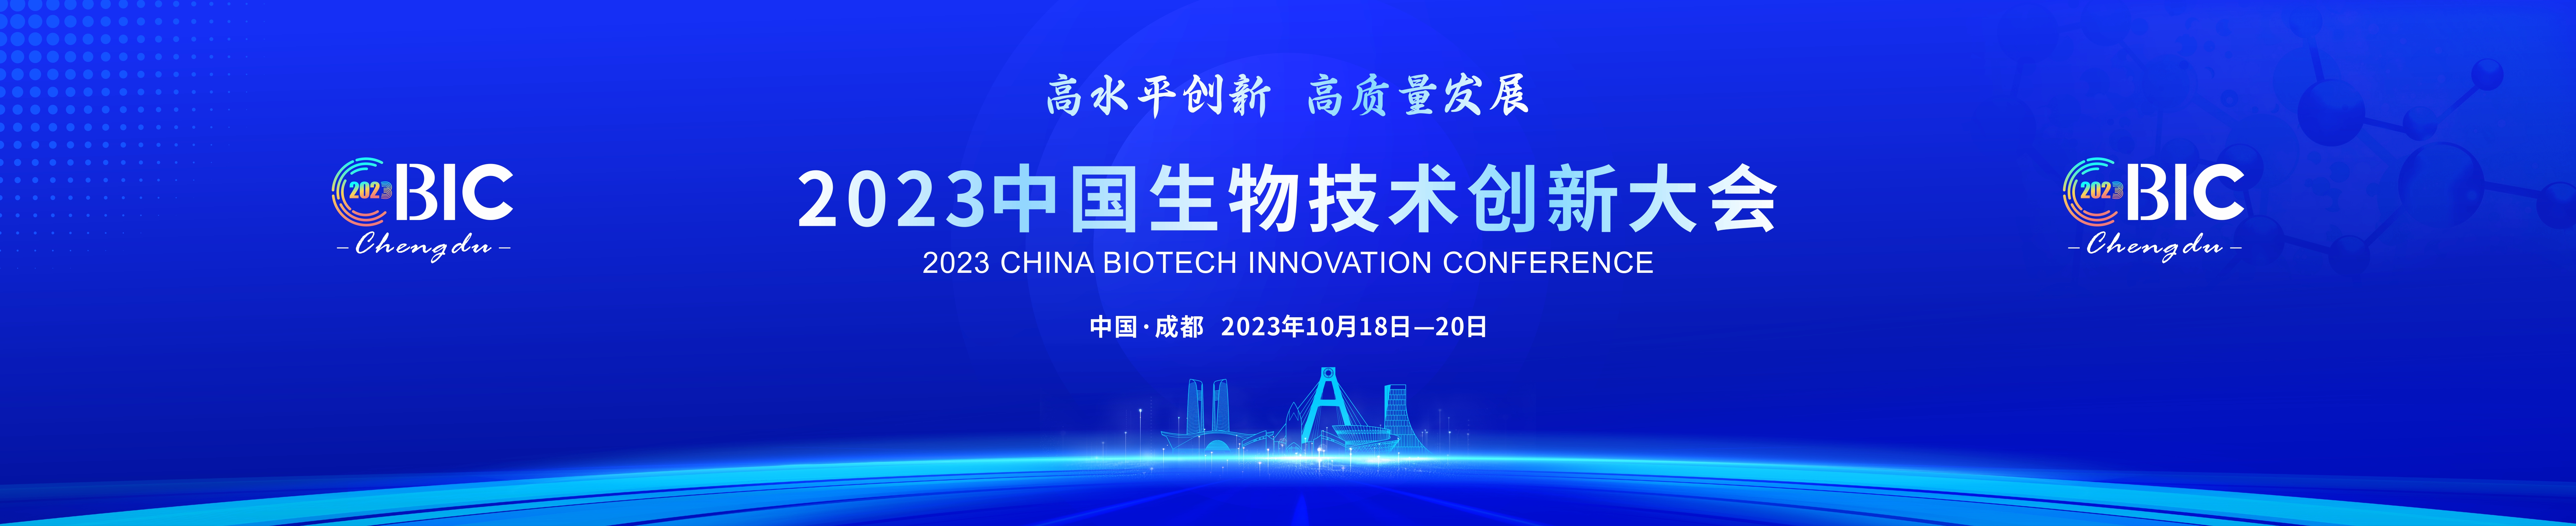 2023中国生物技术创新大会